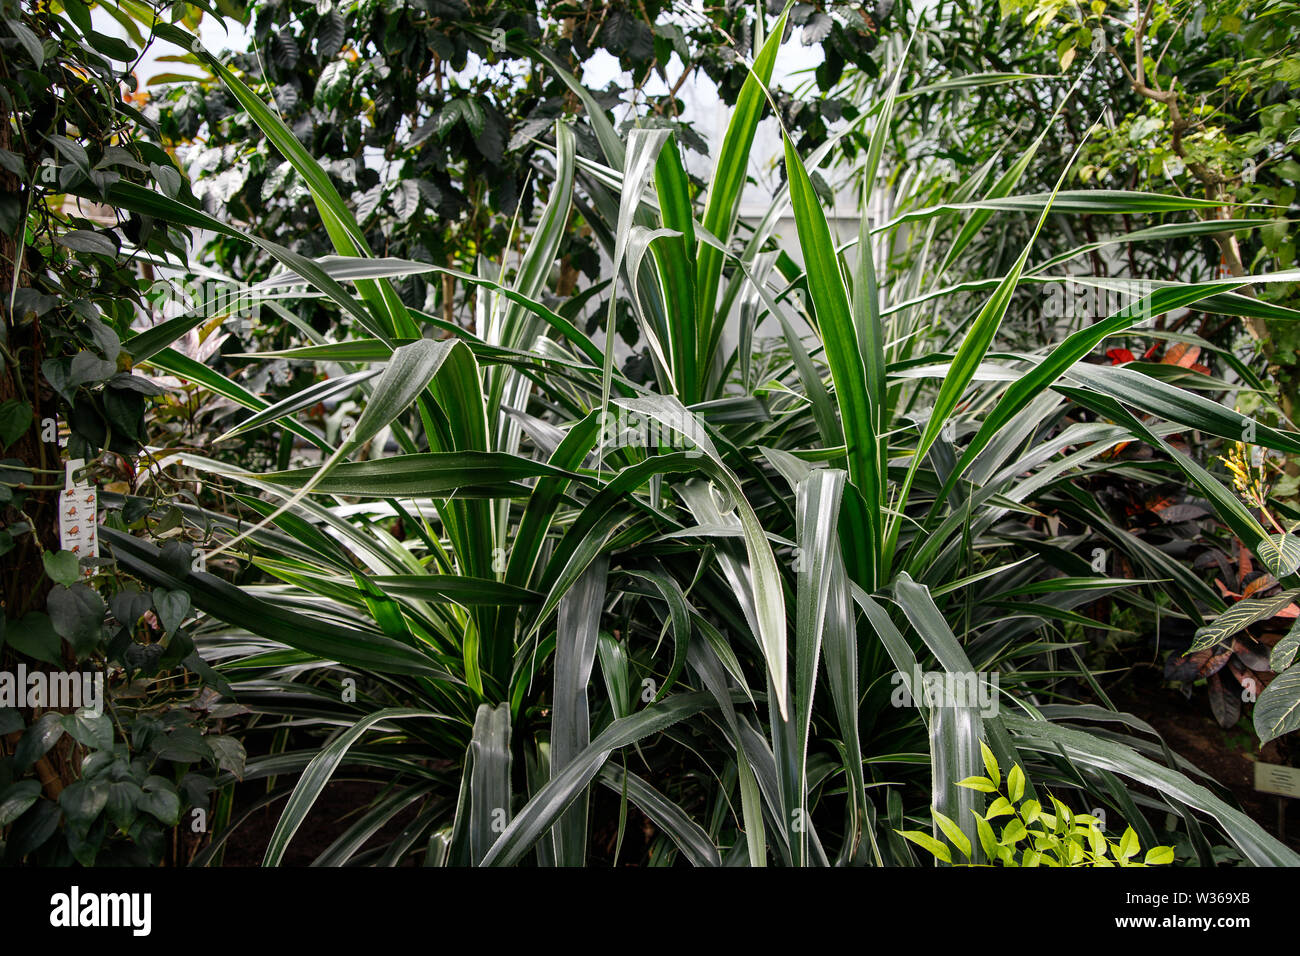 Garden foliage plant- Dracaena Deremensis - Warneckeii. Common name - Striped Dracaena, Dragon tree, Janet Craig. Family Asparagaceae. Stock Photo